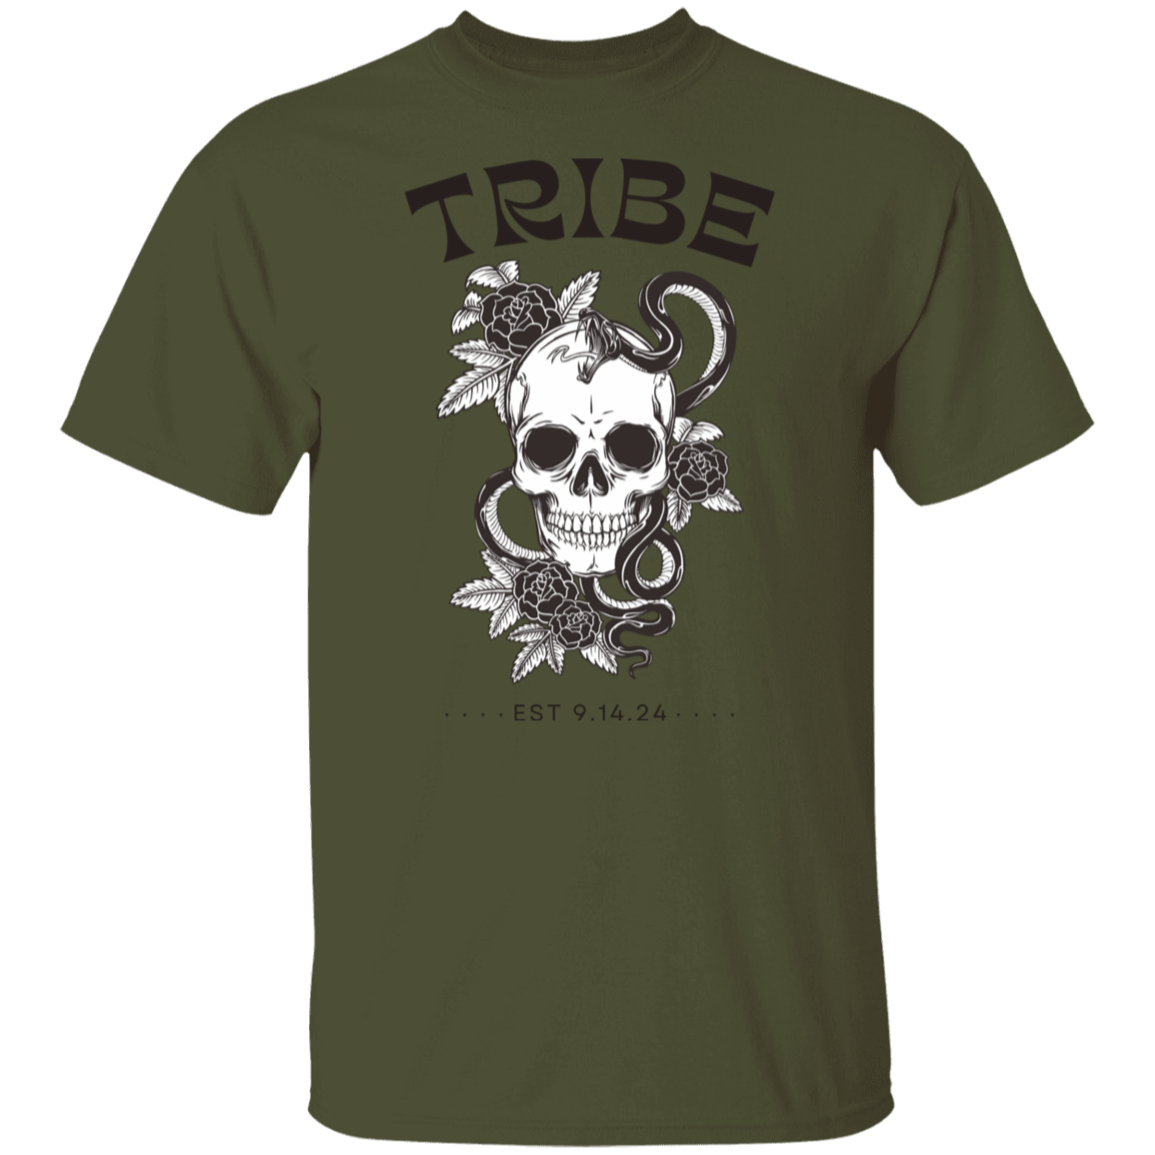 Bride/ Tribe T-Shirt, Bridesmaid's shirts